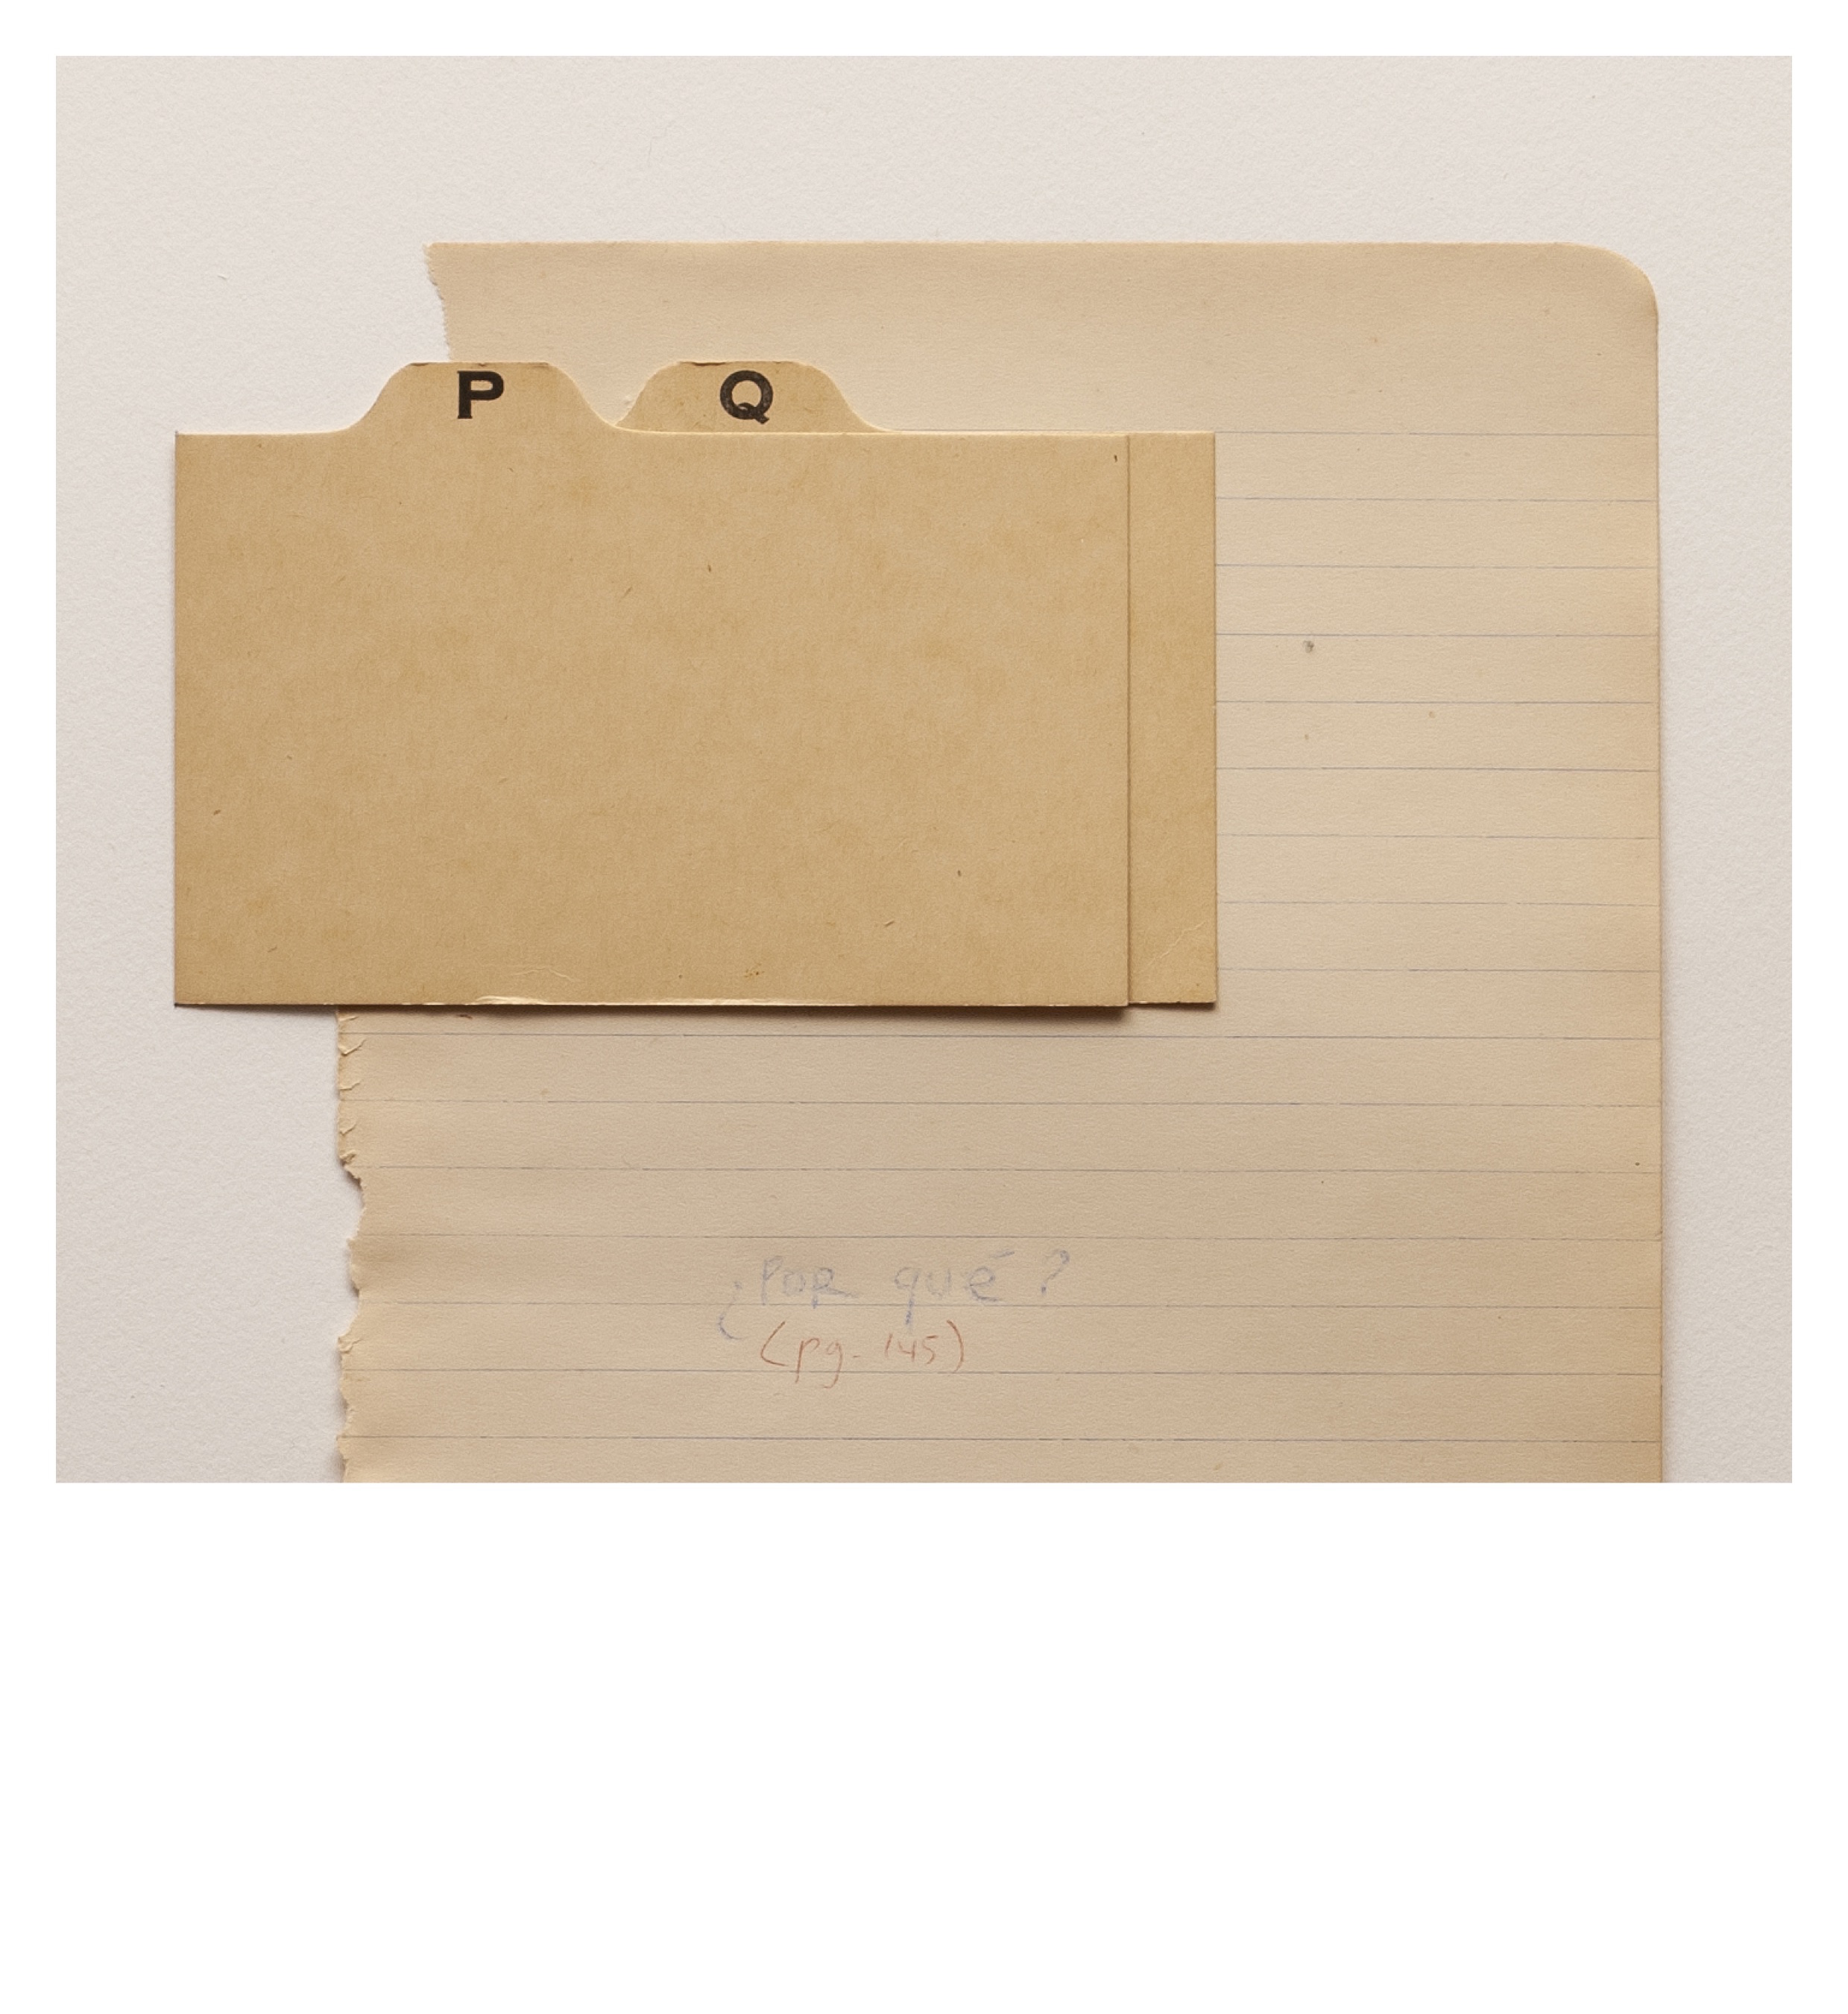 Alicia Mihai Gazcue - Por Qué. 1974. Fichas de cartulina con letras impresas y lápiz de color sobre hoja de cuaderno. 40,64 x 33,02 cm. Único. Detalle